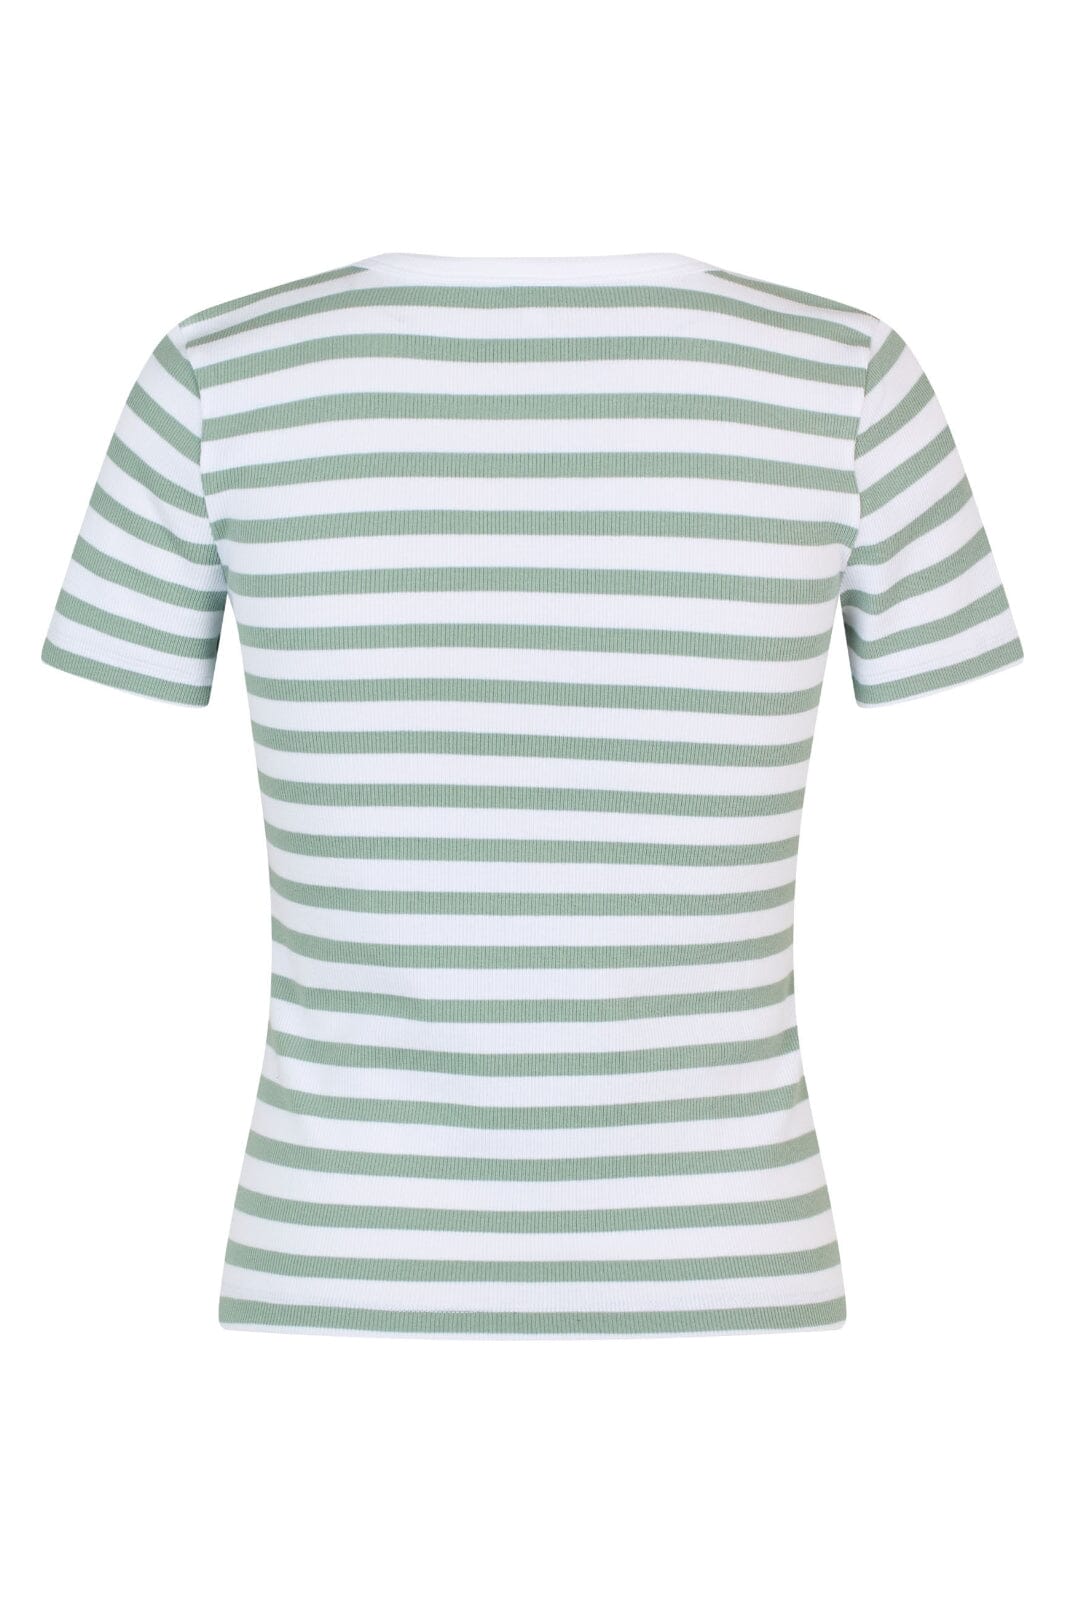 MbyM - Otis-M - P99 White Jade Stripe T-shirts 